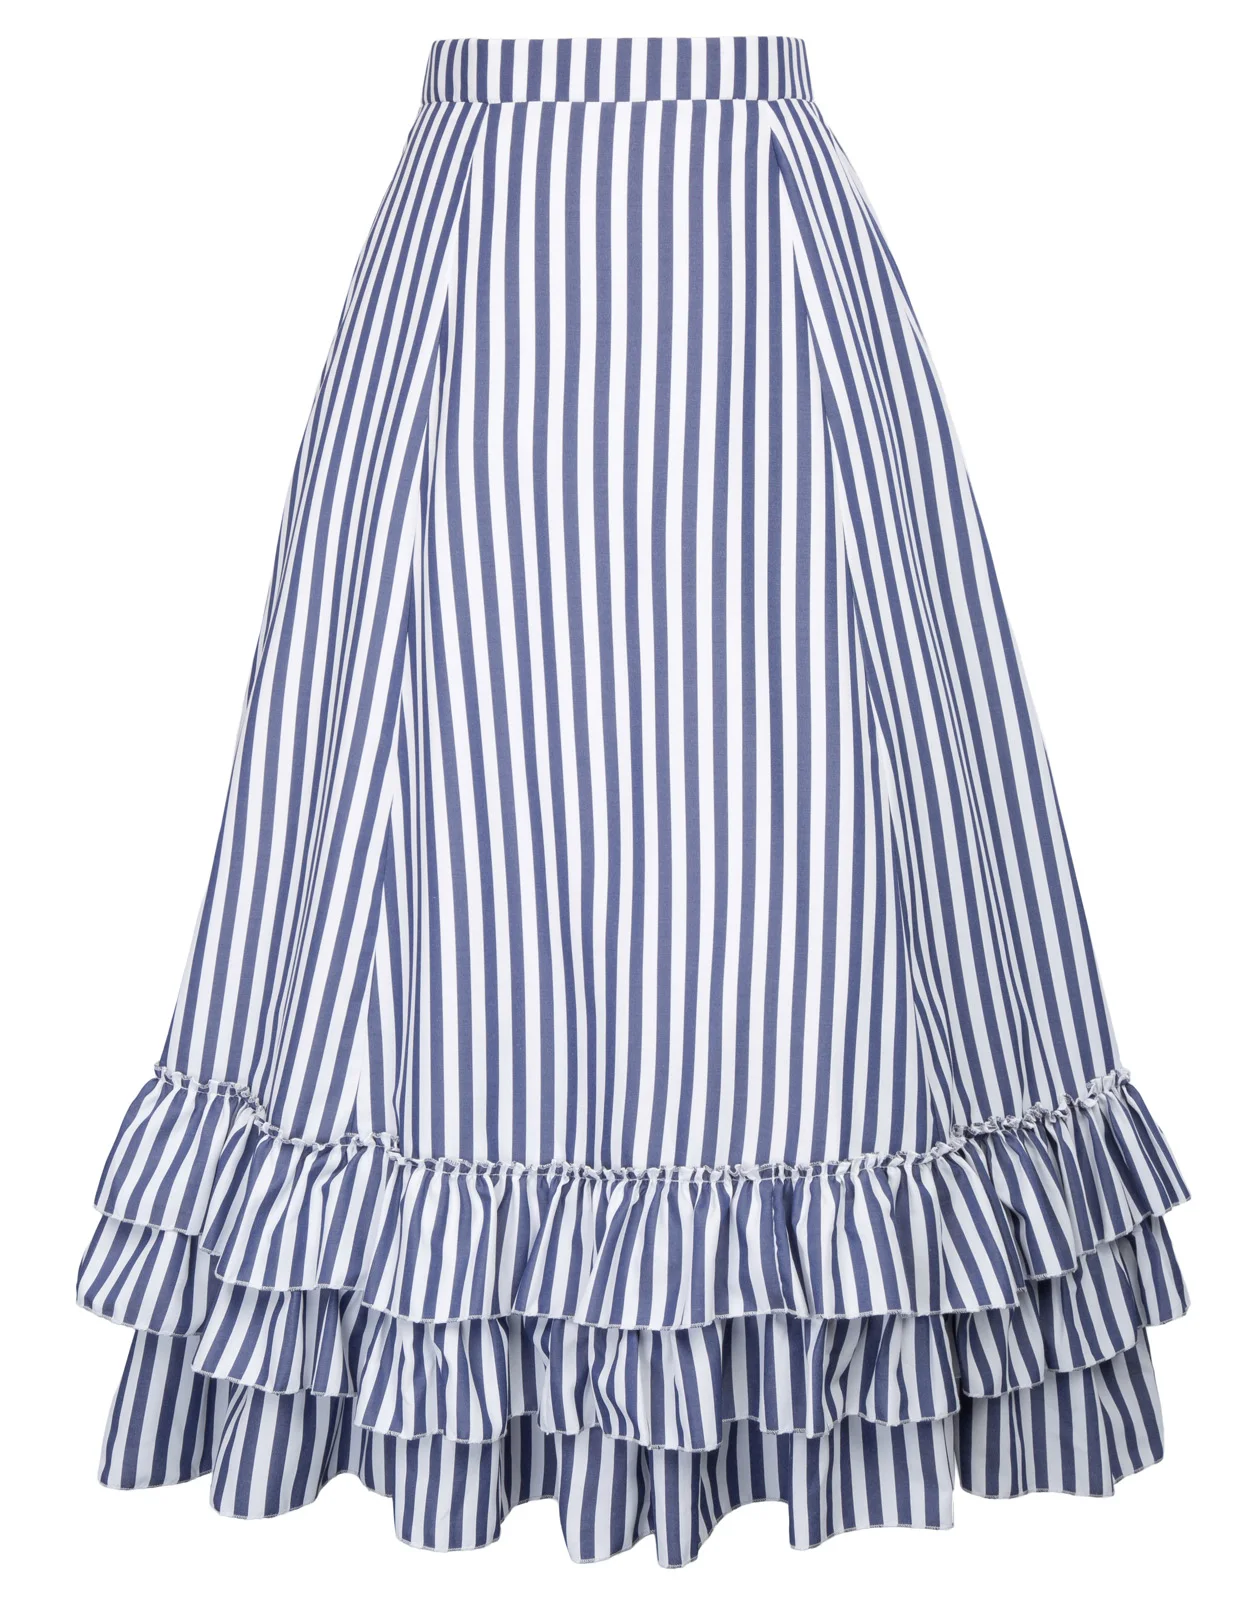 Юбки для женщин с оборками плиссированные дизайн Ретро Винтаж Готический стиль стимпанк вечерние в черно-белую полоску суета юбка falda - Цвет: Blue White